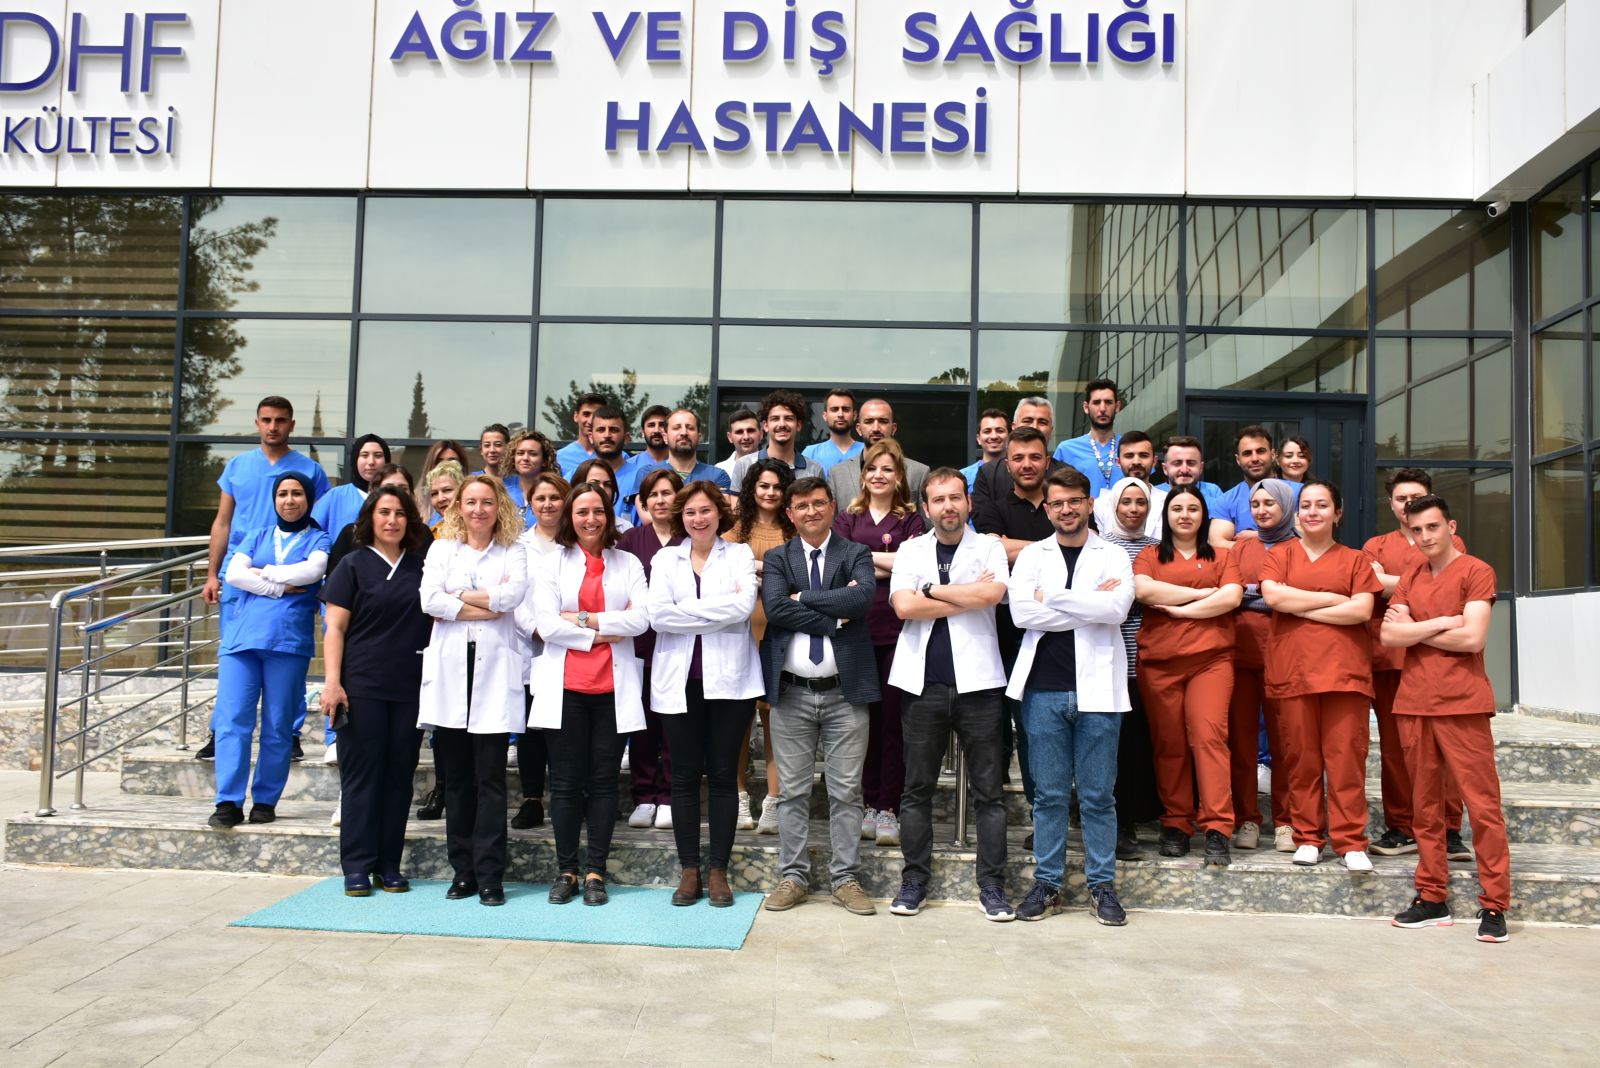 Burdur Mehmet Akif Ersoy Üniversitesi Ağız ve Diş Sağlığı Hastanesi 